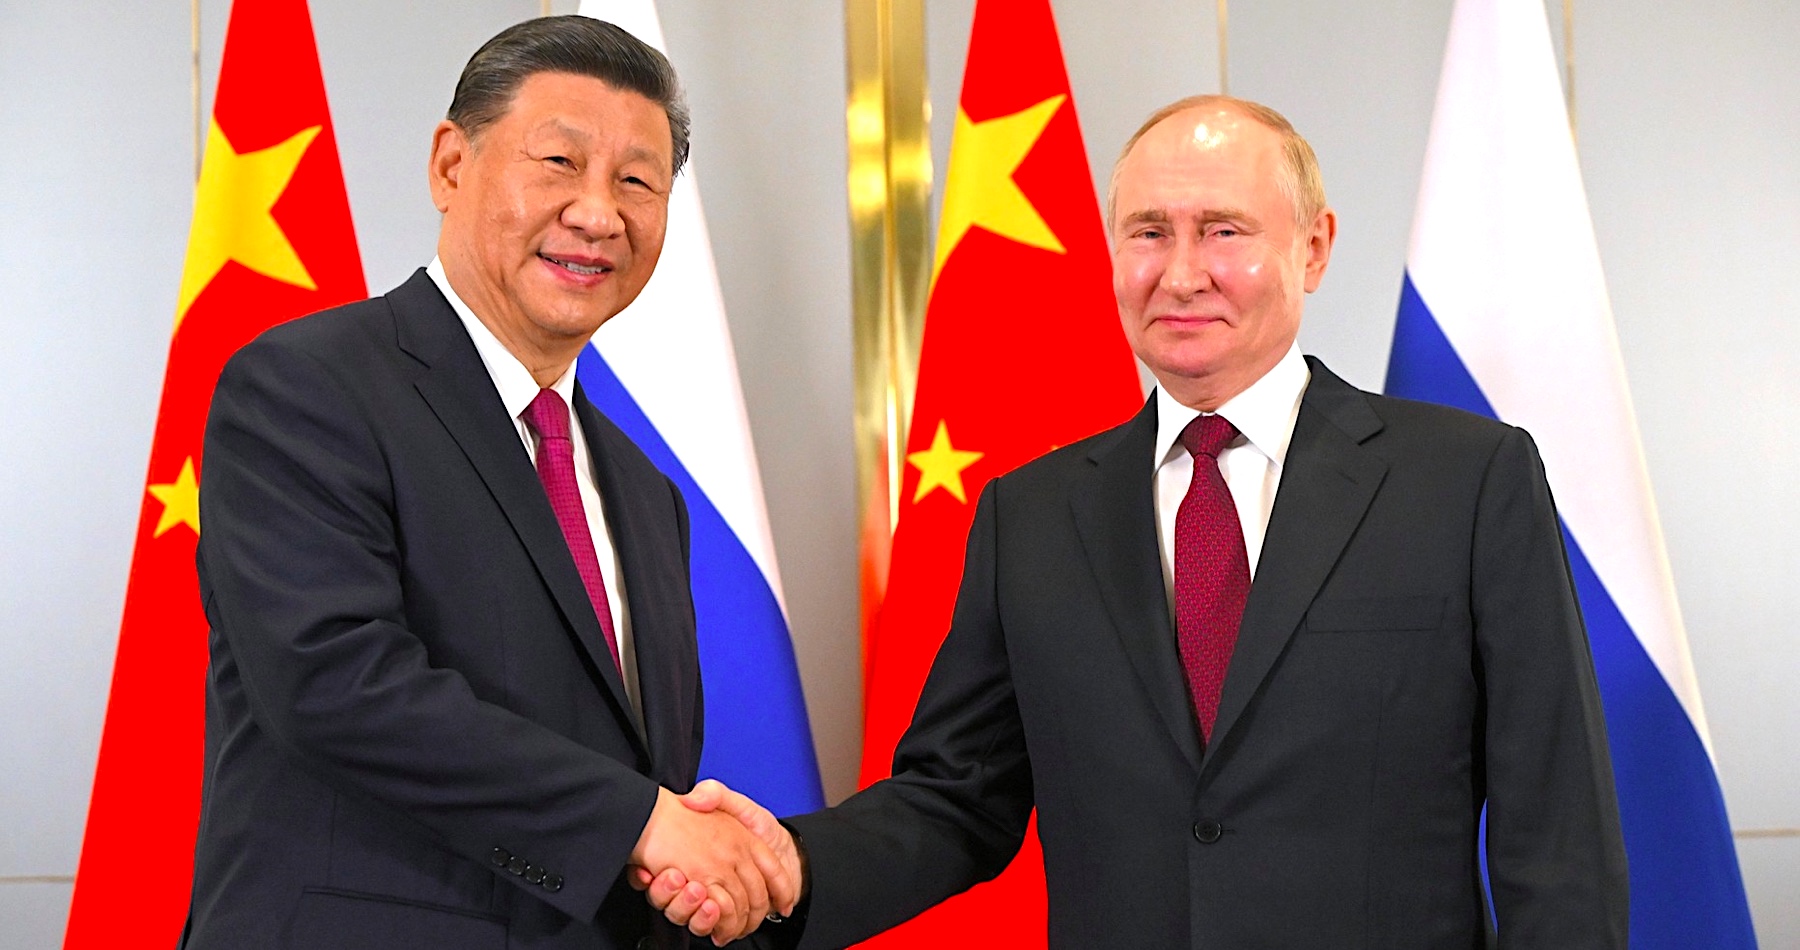 VIDEO: Putin a Si Ťin-pching sa na stretnutí v Astane zhodli, že mierové rokovania o ukončení vojny na Ukrajine sú bez prítomnosti Ruska zbytočné. Šanghajskú organizáciu pre spoluprácu, ktorú založili Rusko a Čína označil ruský líder za jednu z kľúčových opôr spravodlivého multipolárneho sveta fungujúceho v záujme všetkých ľudí